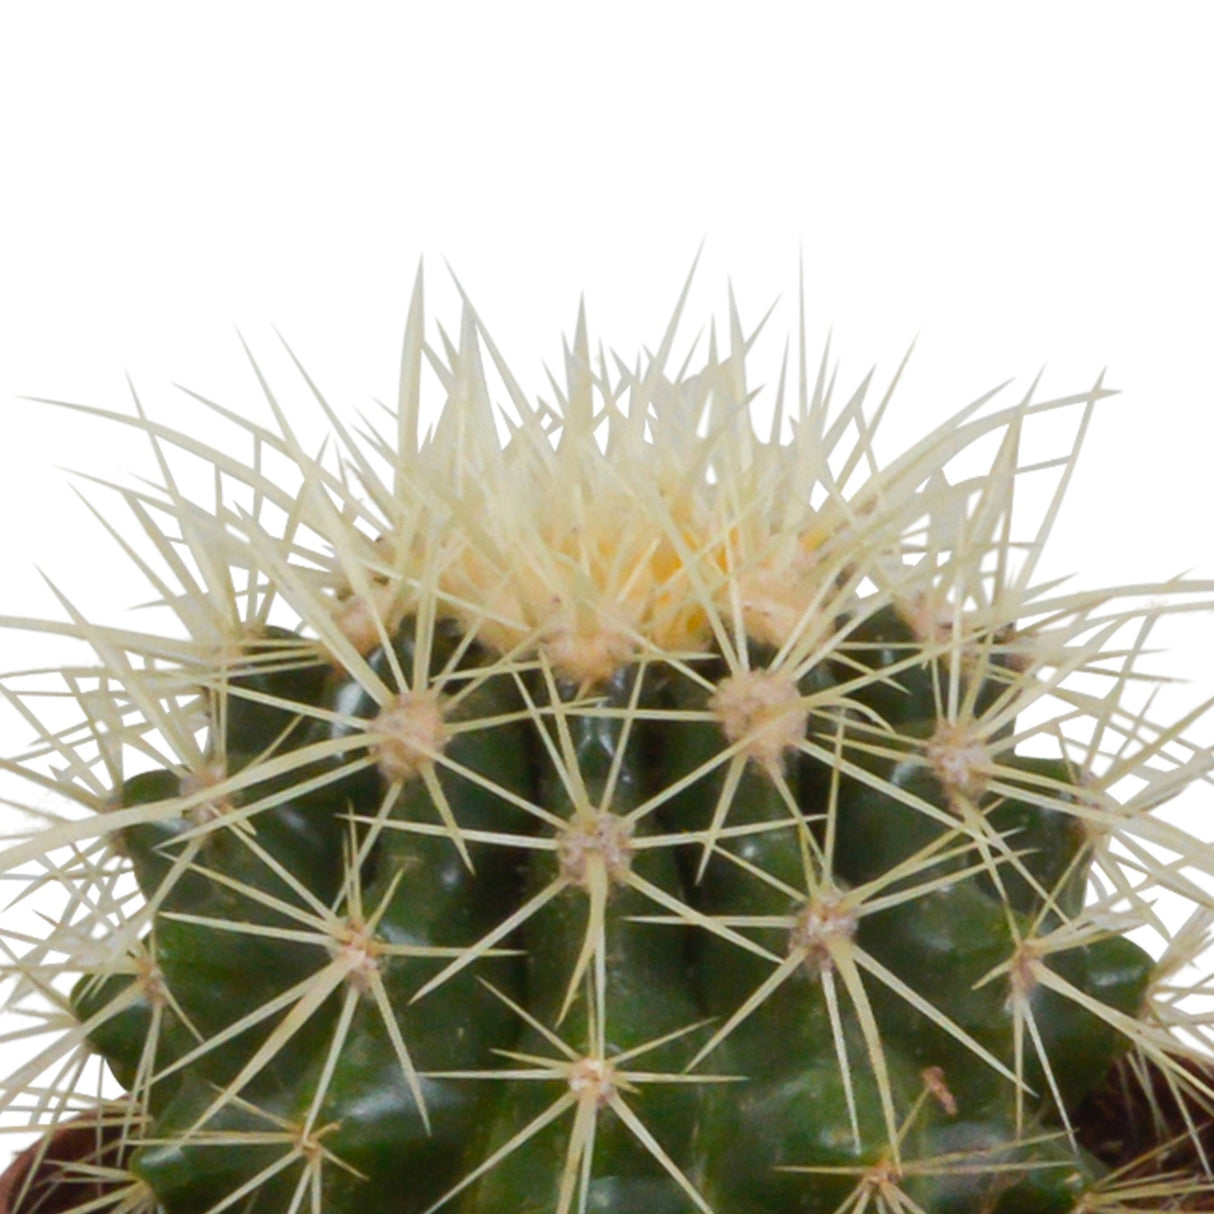 Livraison plante Coffret cadeau cactus et ses caches - pots terracotta - Lot de 3 plantes, h16cm